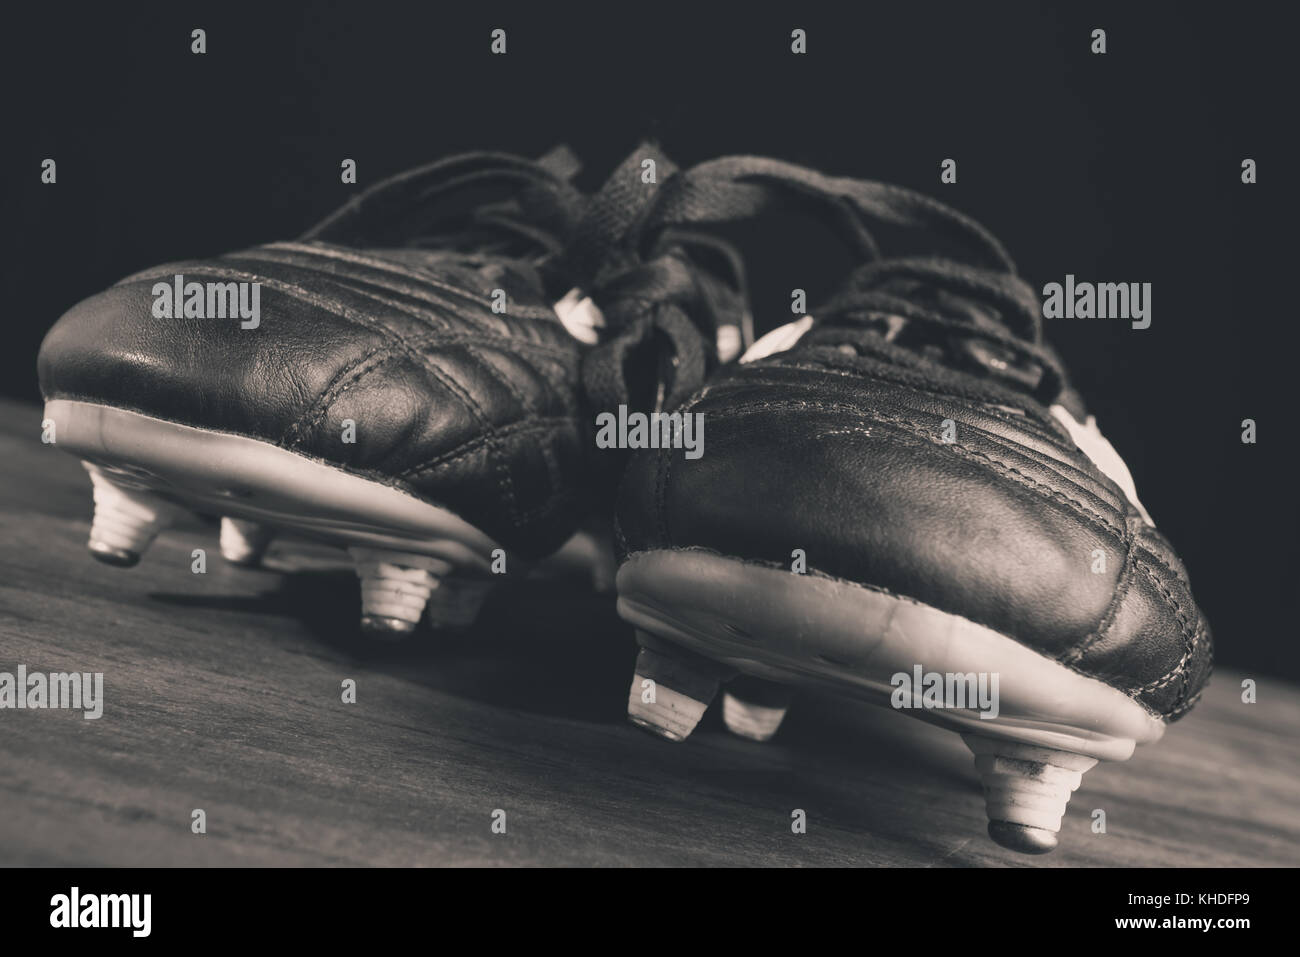 vintage soccer shoes